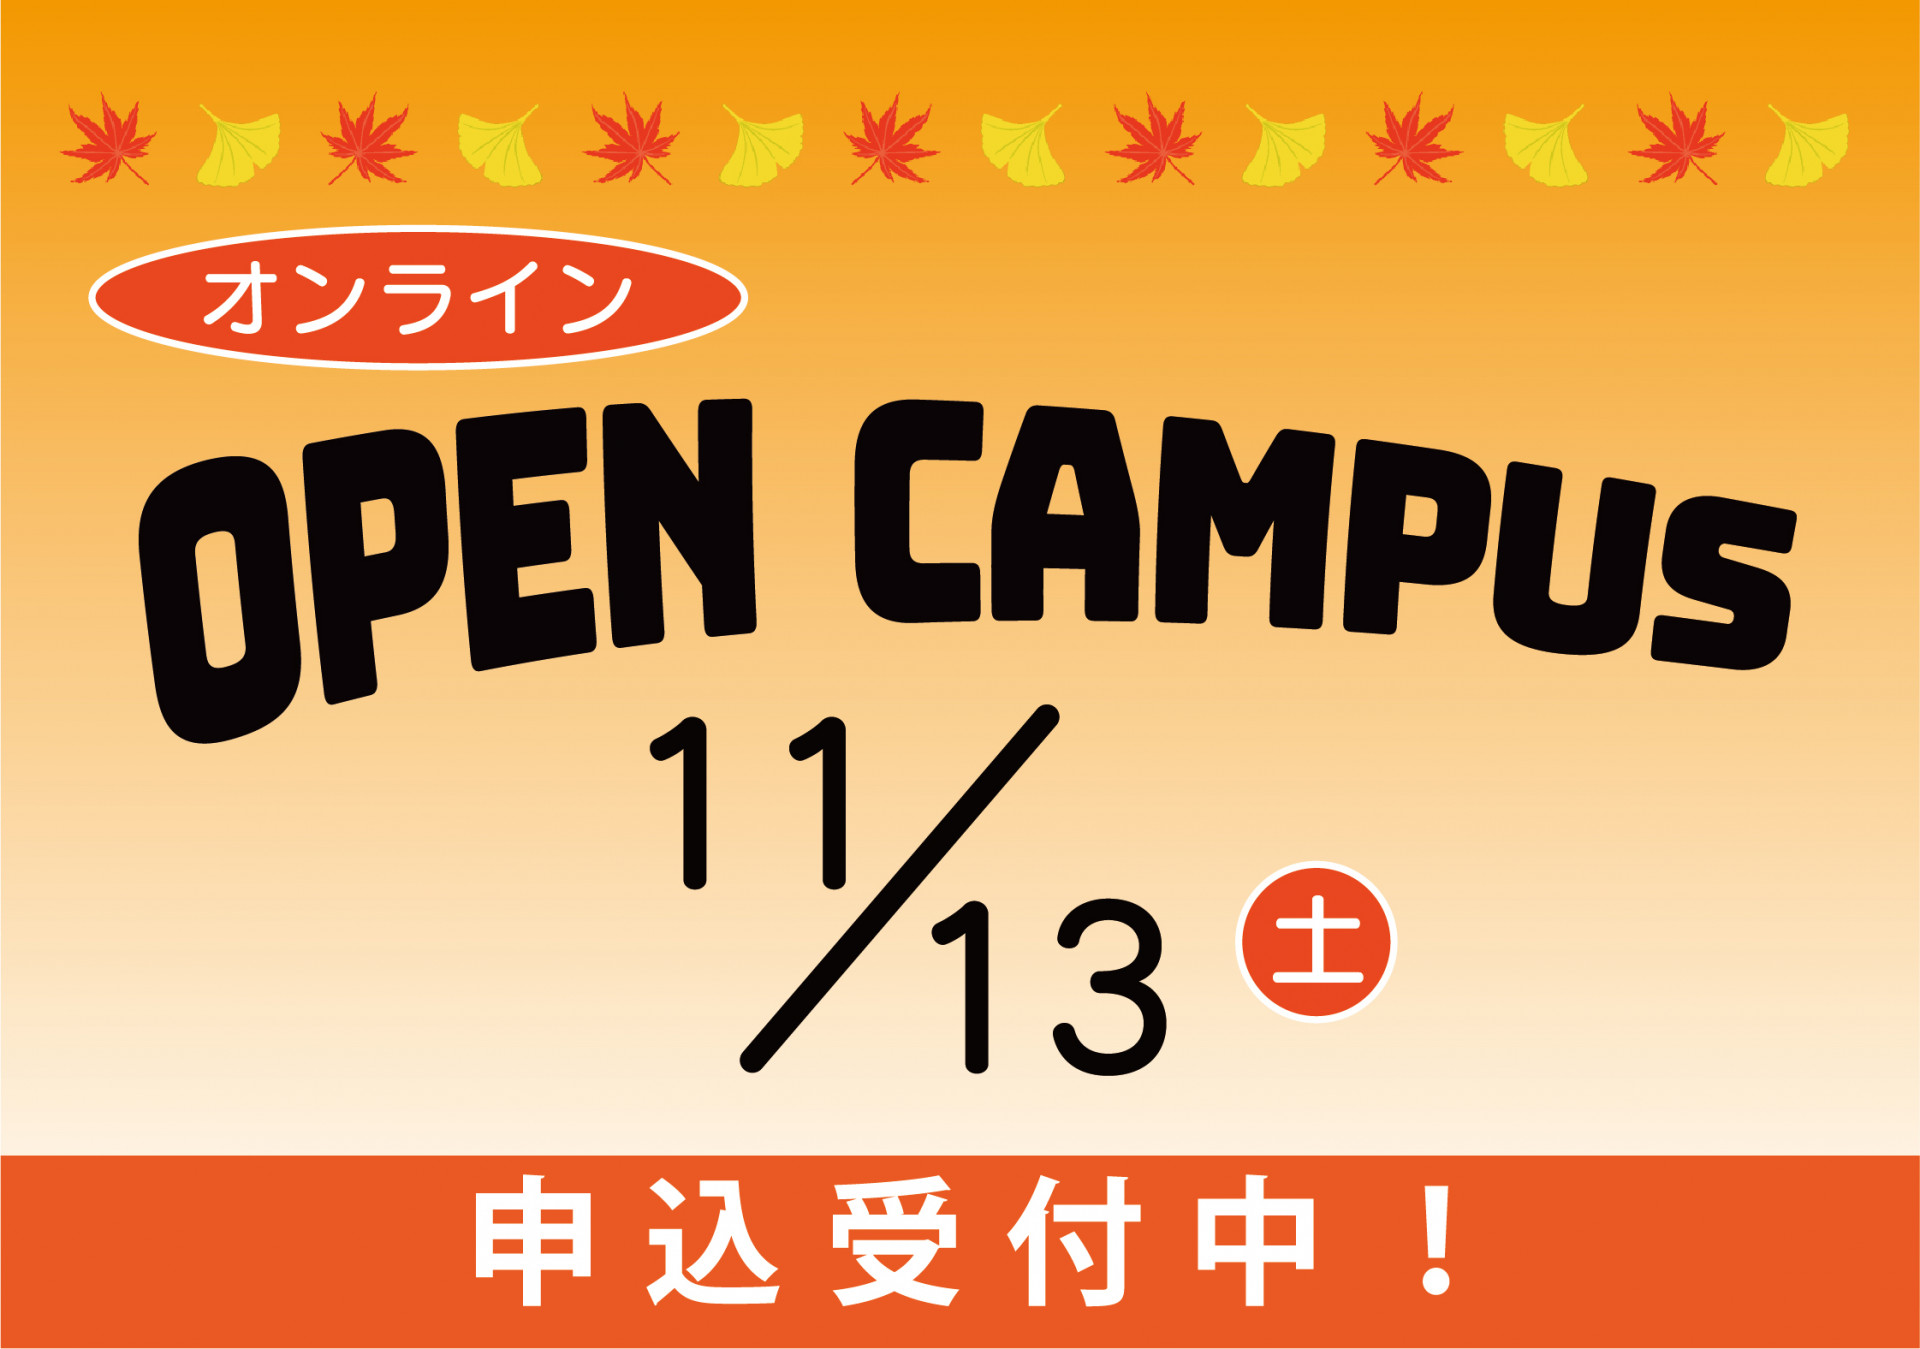 11/13【オンライン】オープンキャンパスを開催いたします サムネイル